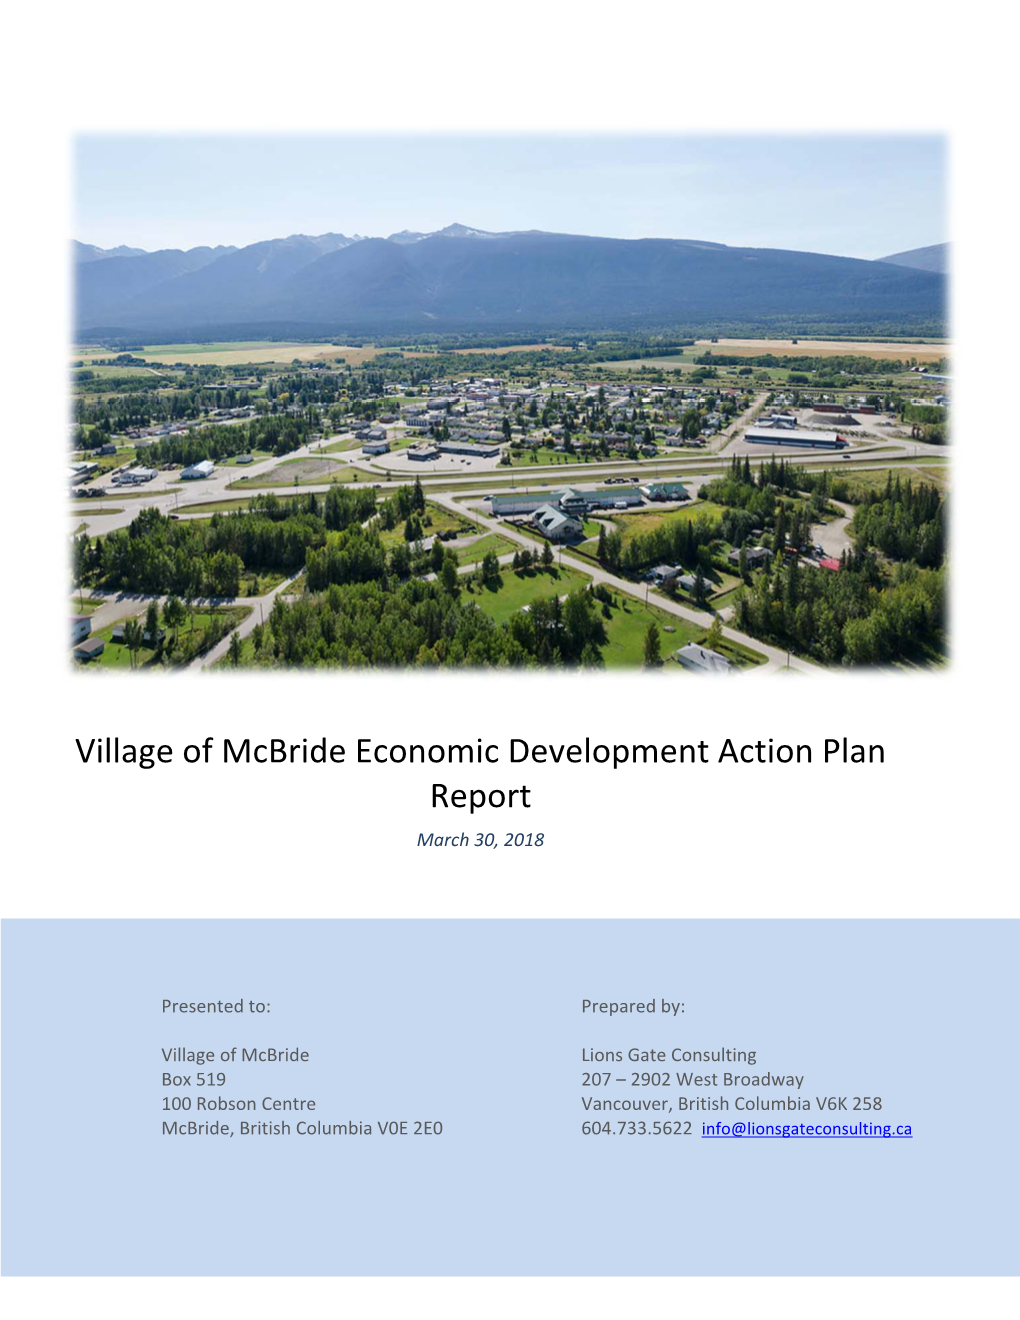 Village of Mcbride Economic Development Action Plan Report March 30, 2018